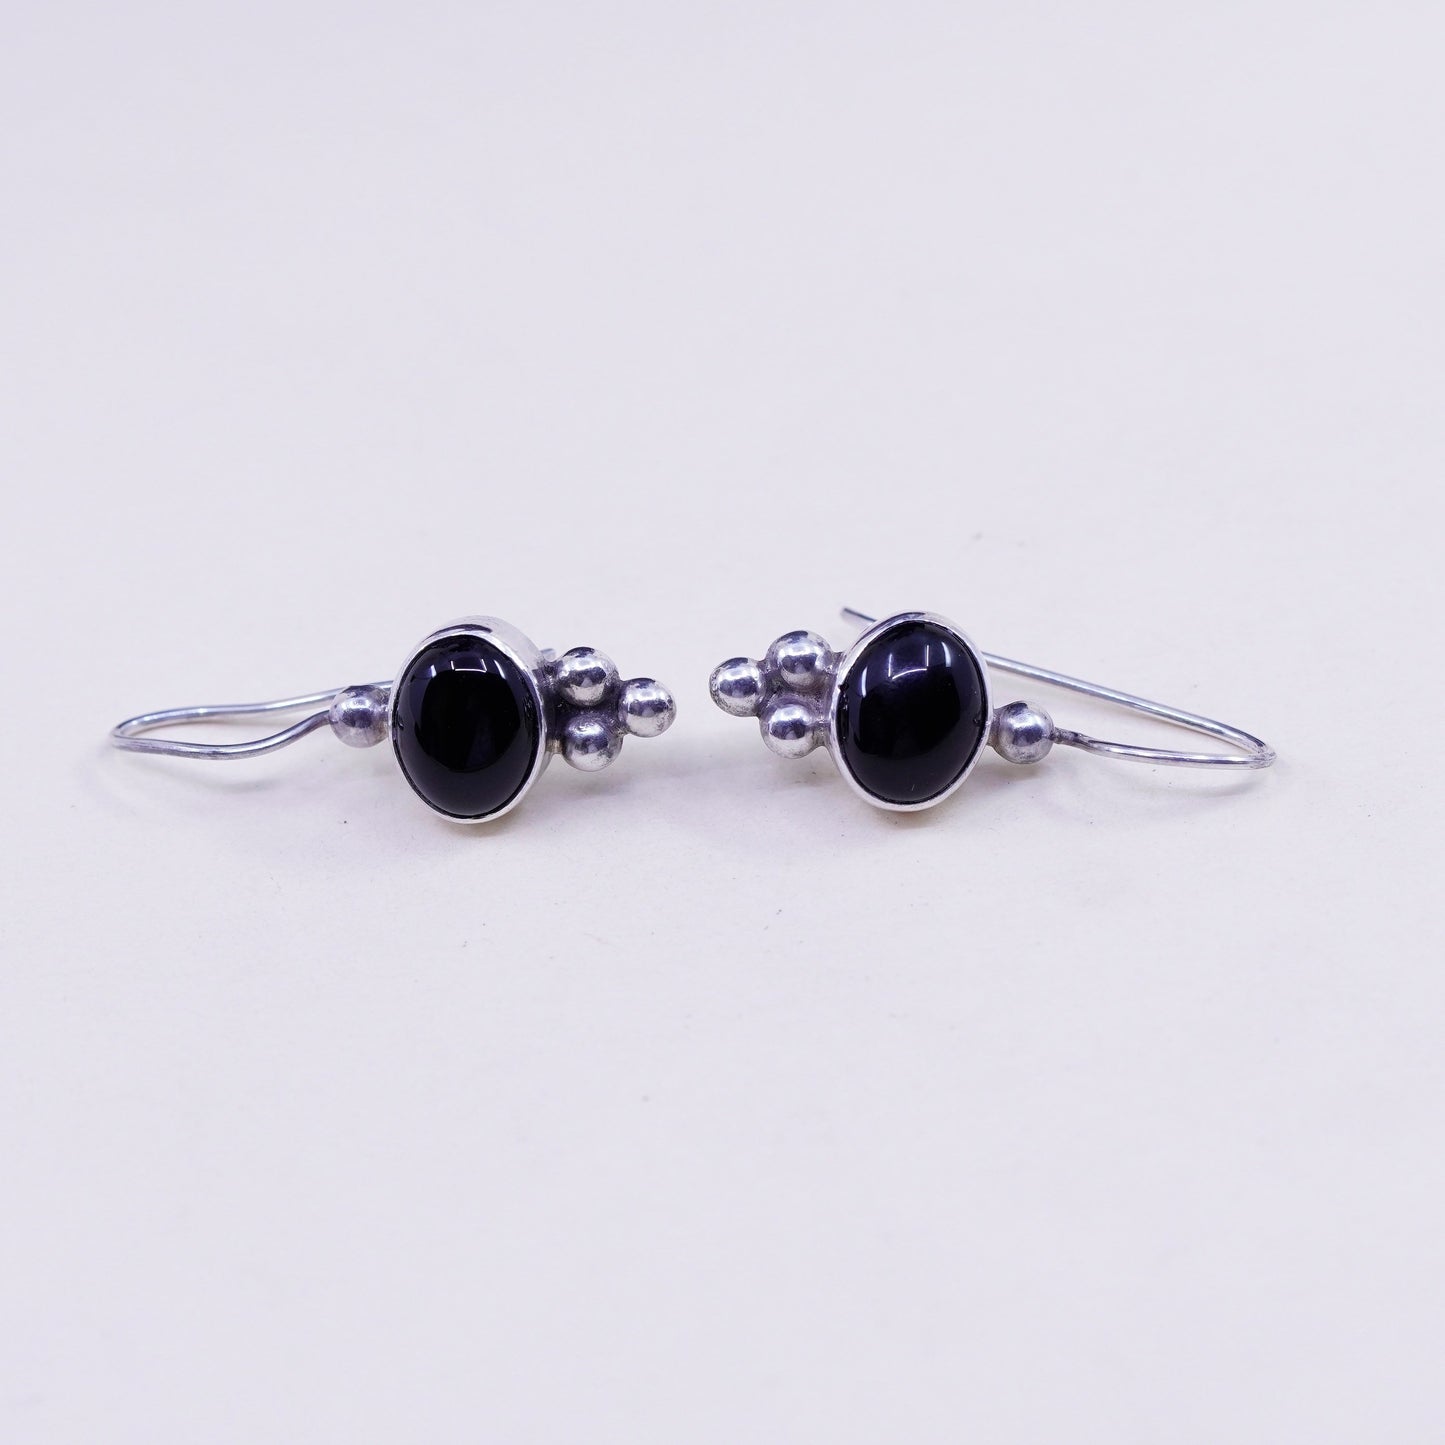 Vintage Sterling silver handmade earrings, 925 oval obsidian drops